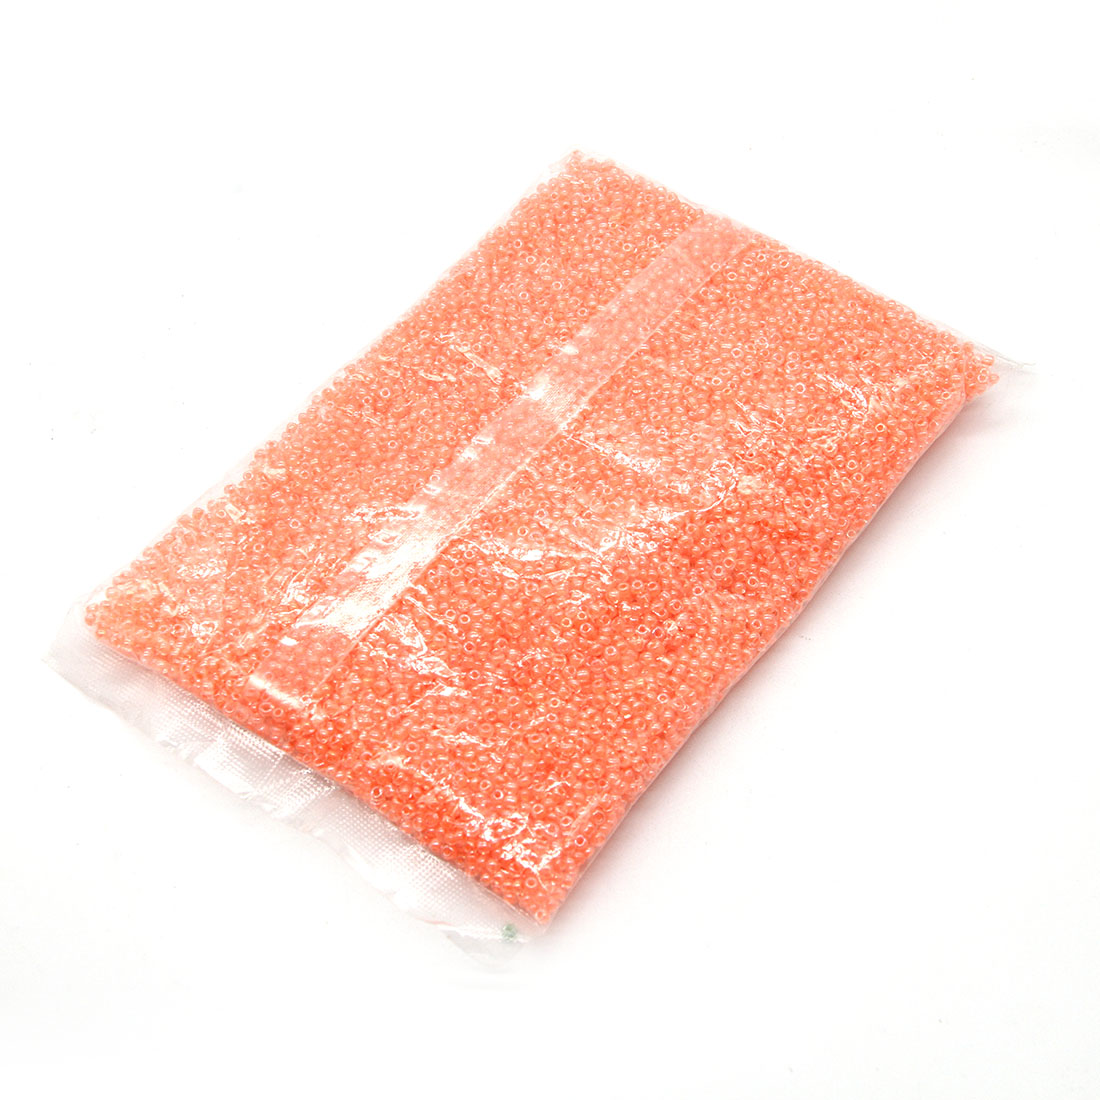 Deep orange 3mm 10,000 packs